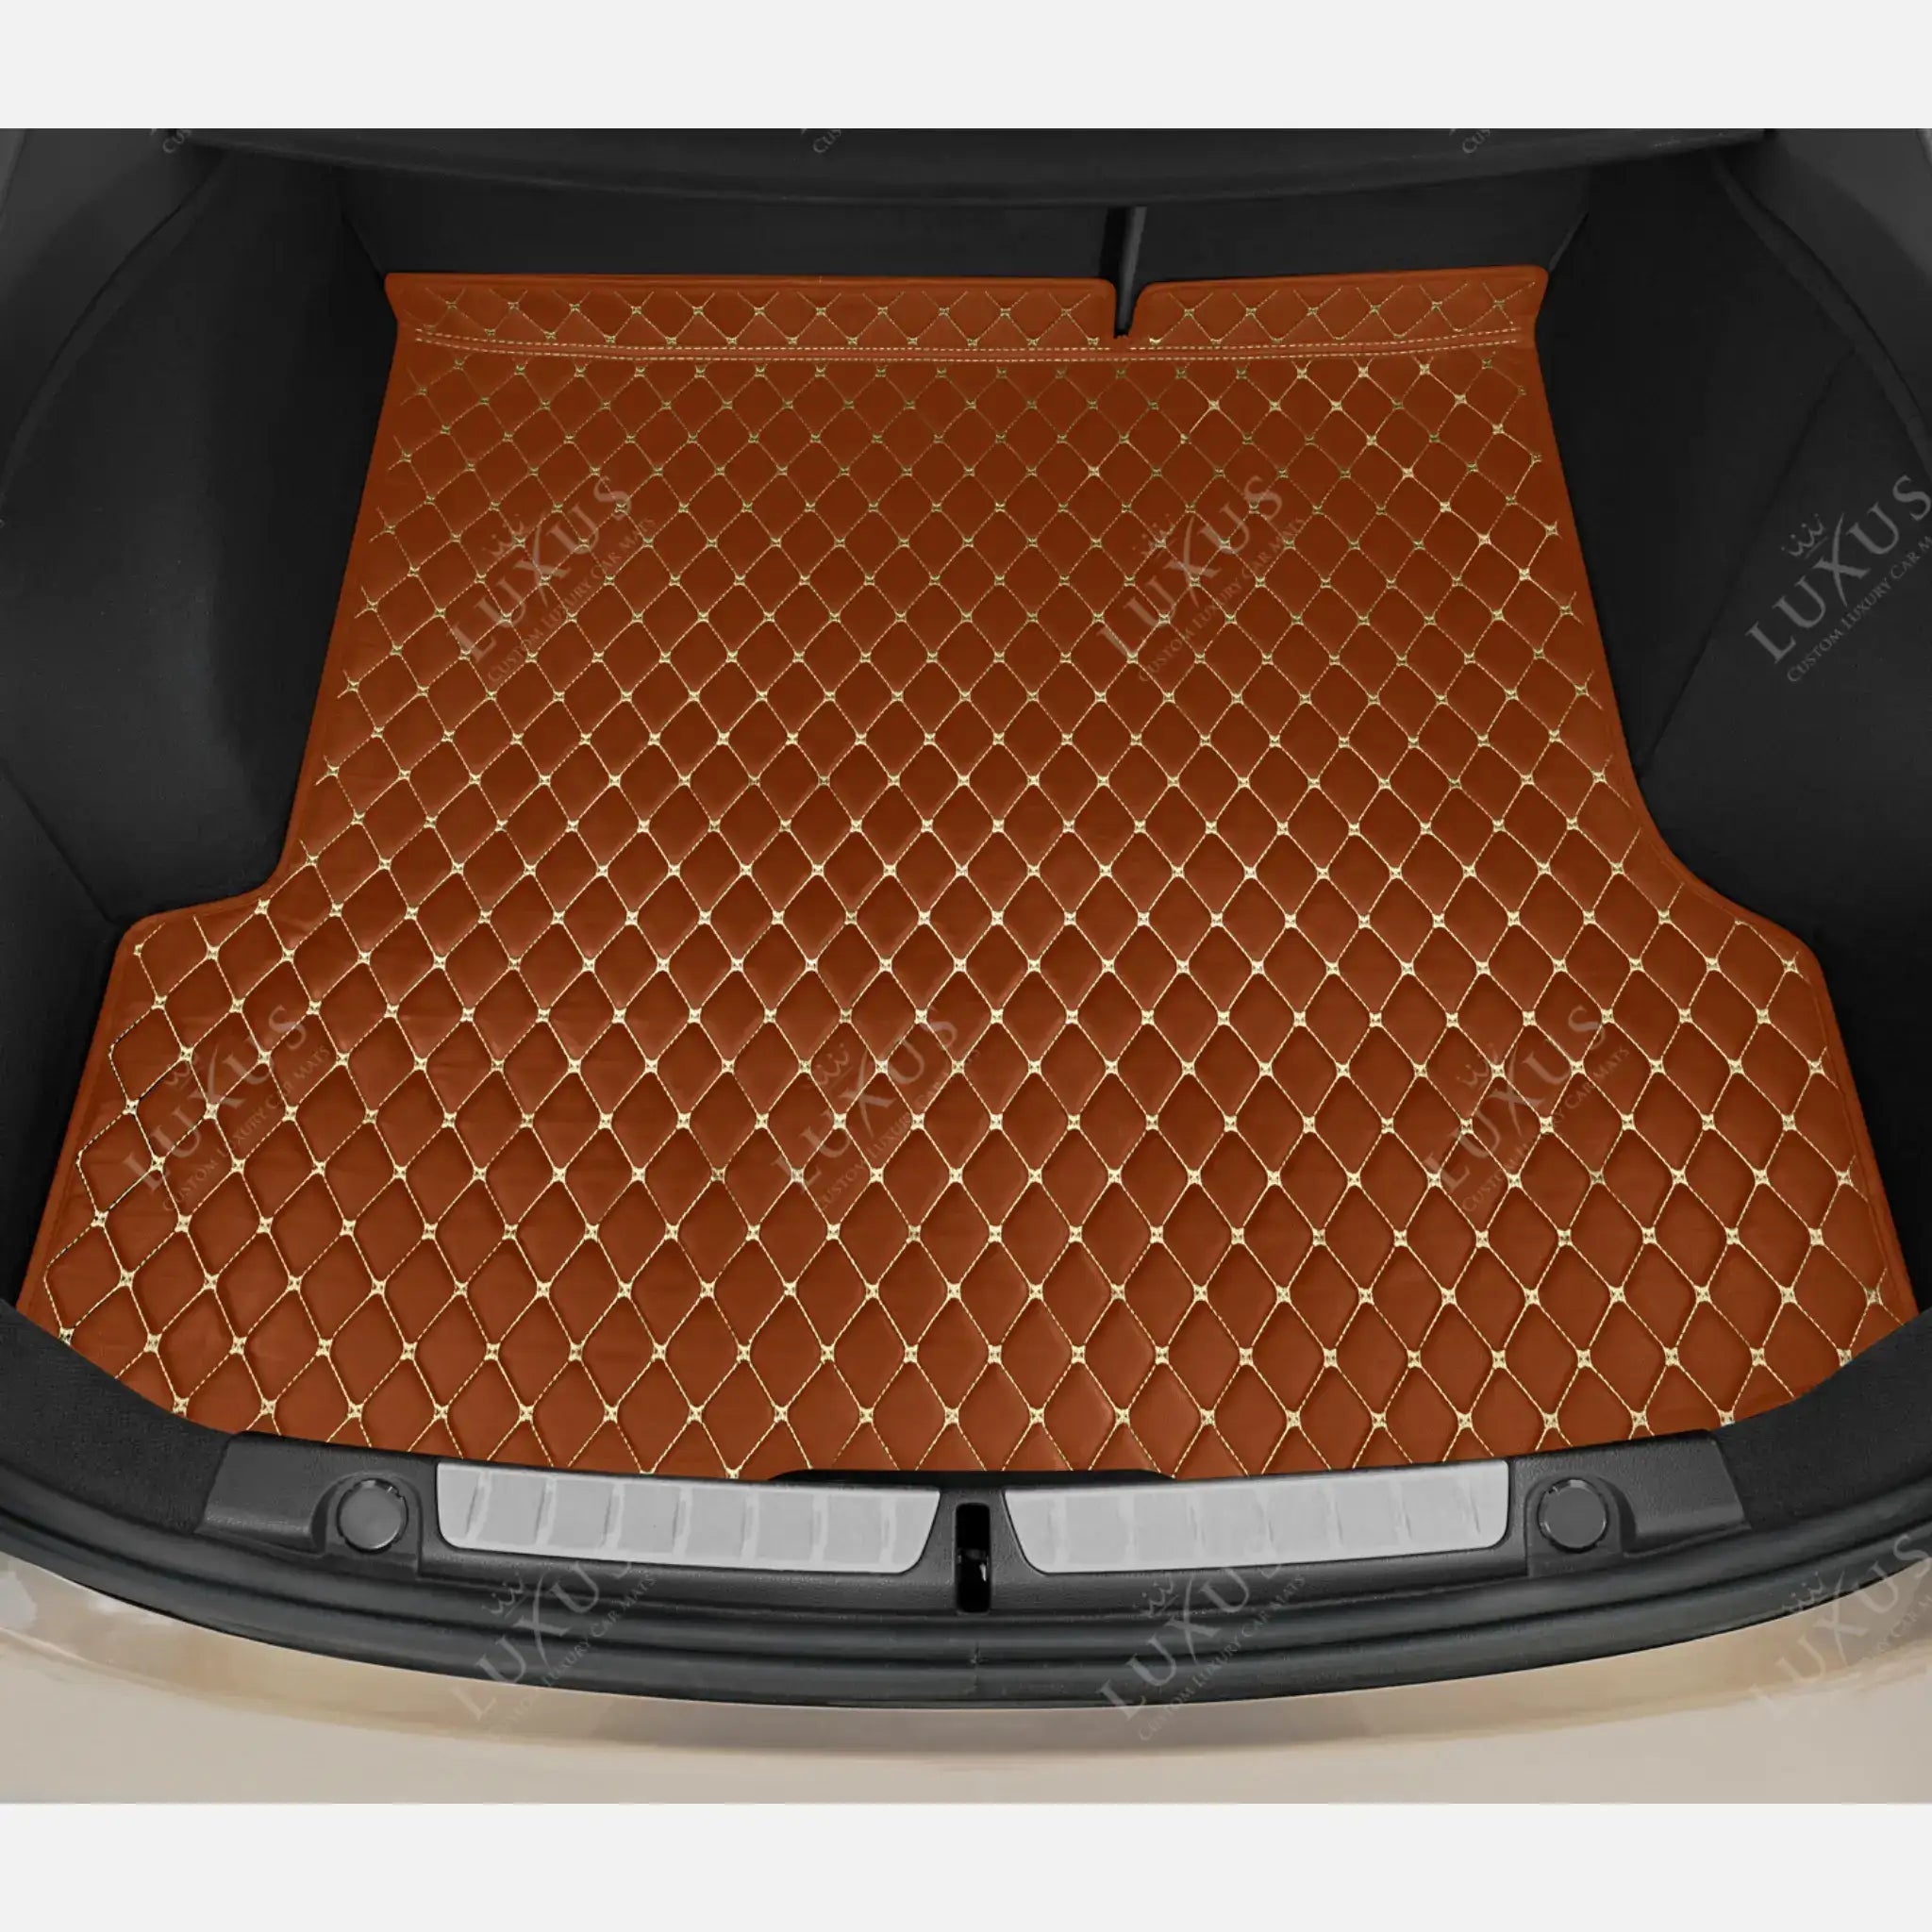 Luxus Car Mats™ - Caramel Bruin Luxe Lederen Kofferbak Mat